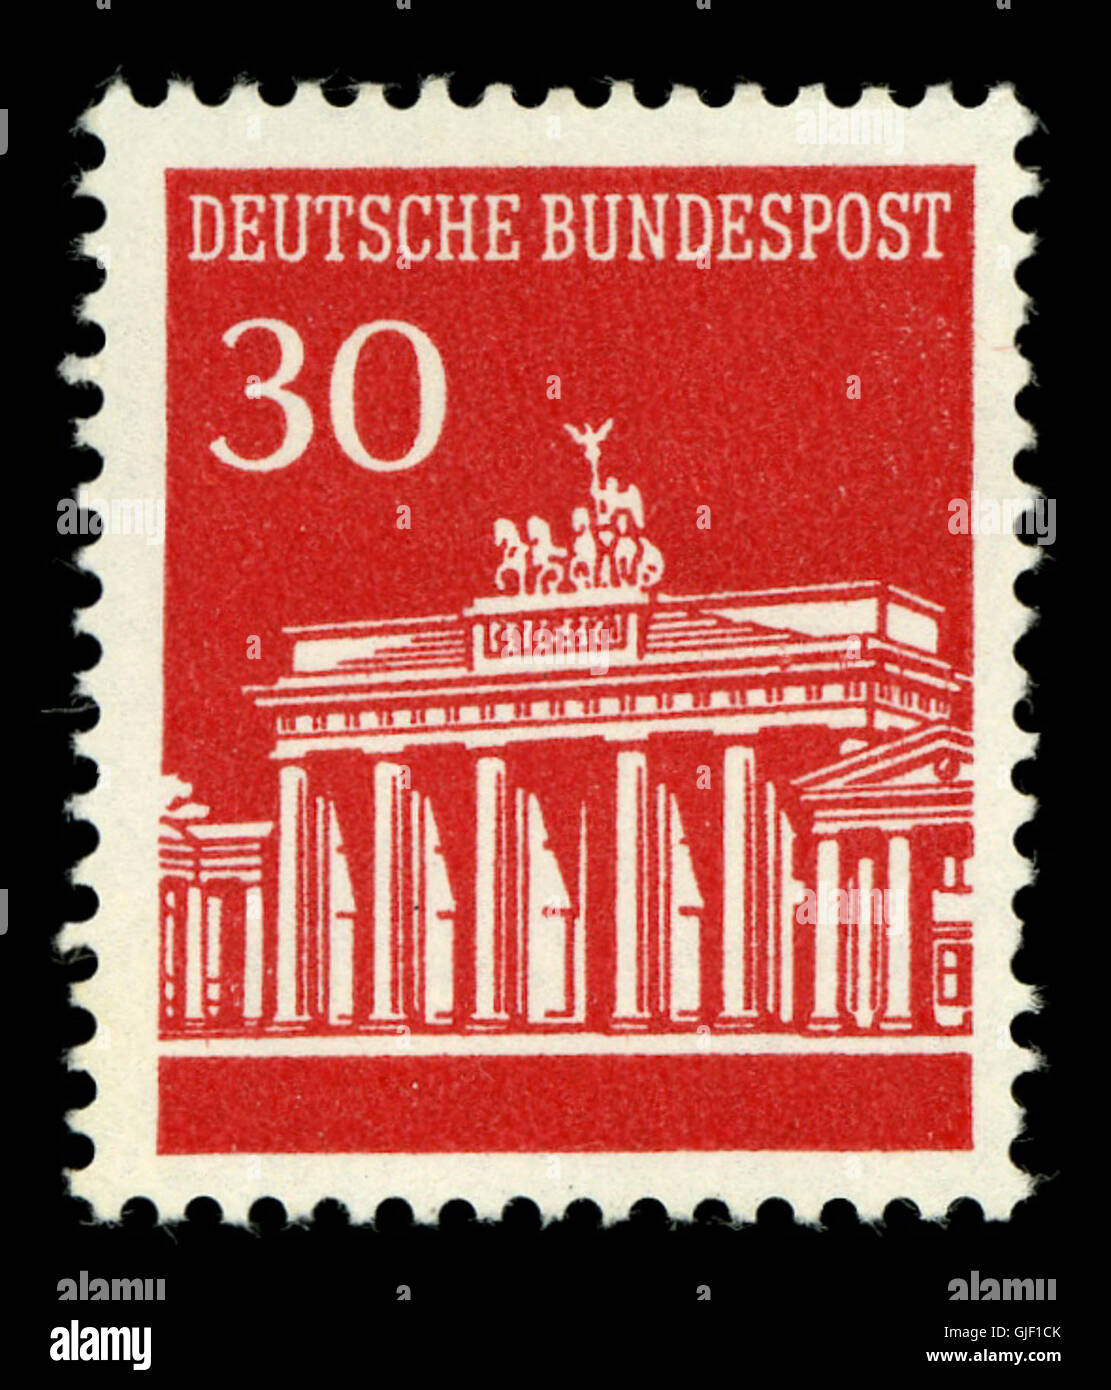 Deutsche Bundespost - Brandenburger Tor - 30 Pf Stock Photo